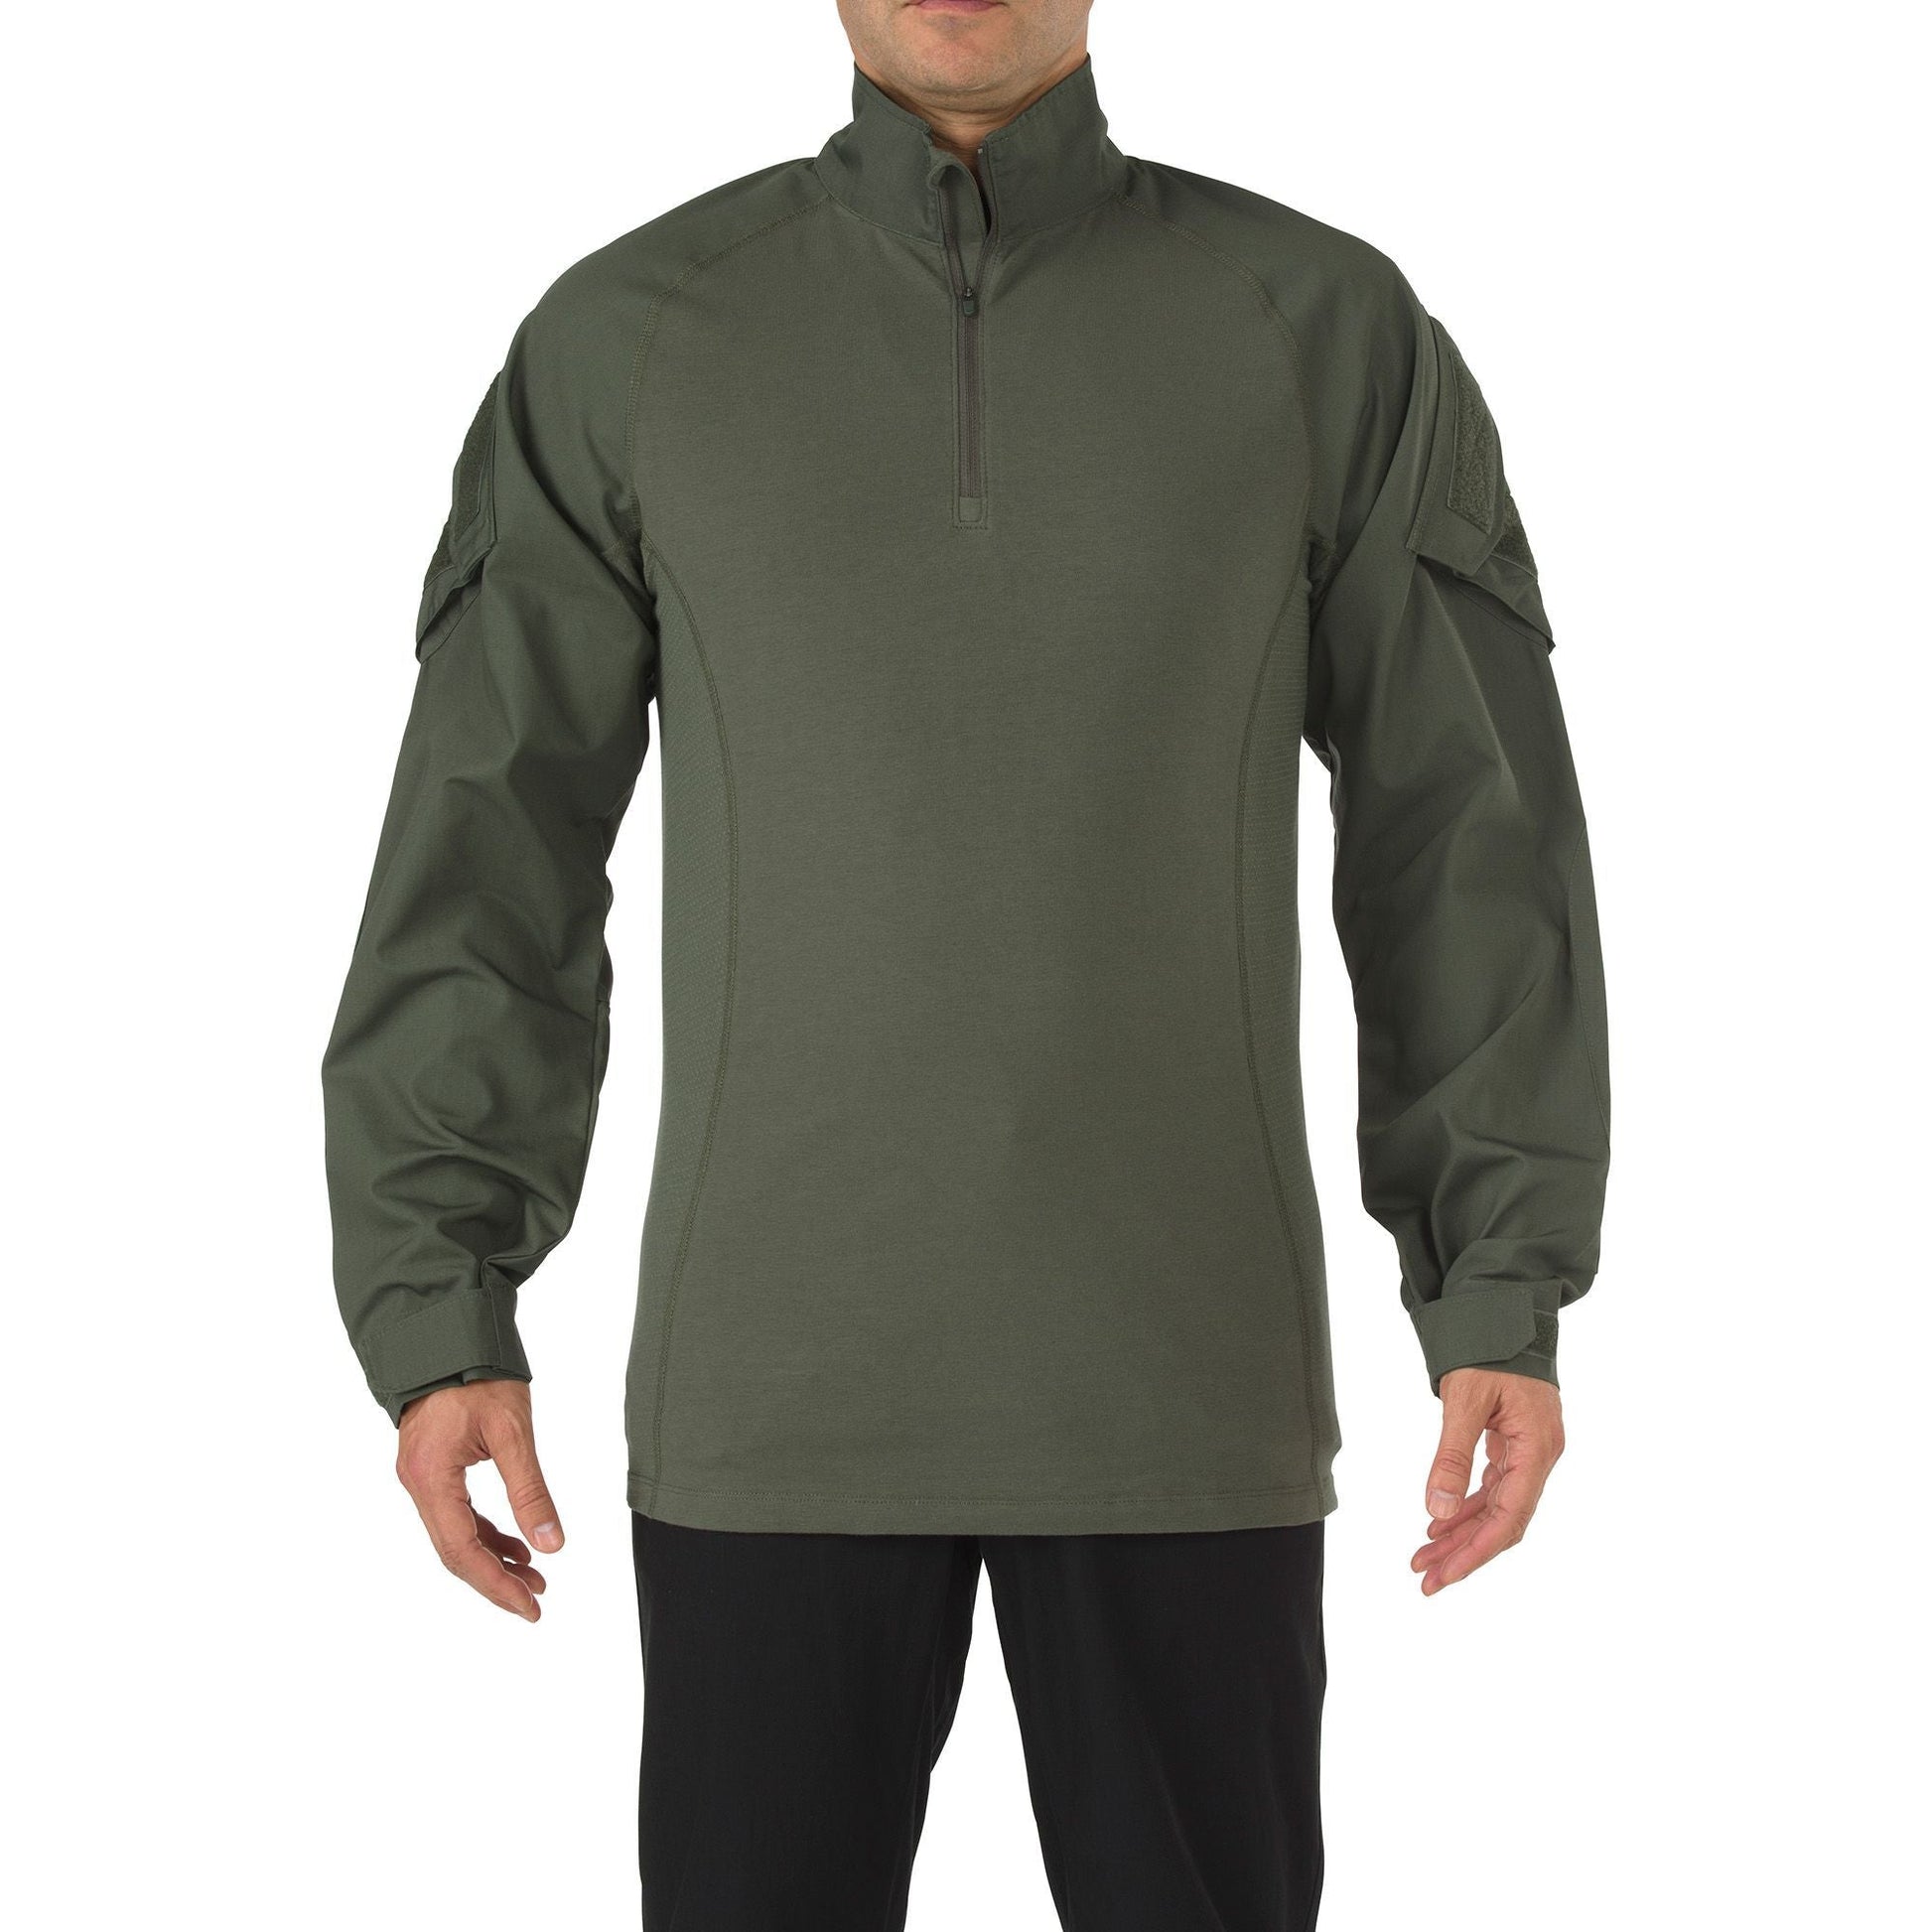 5.11 Tactical Rapid Assault Shirt TDU Green Extra Small Tactical Distributors Ltd New Zealand